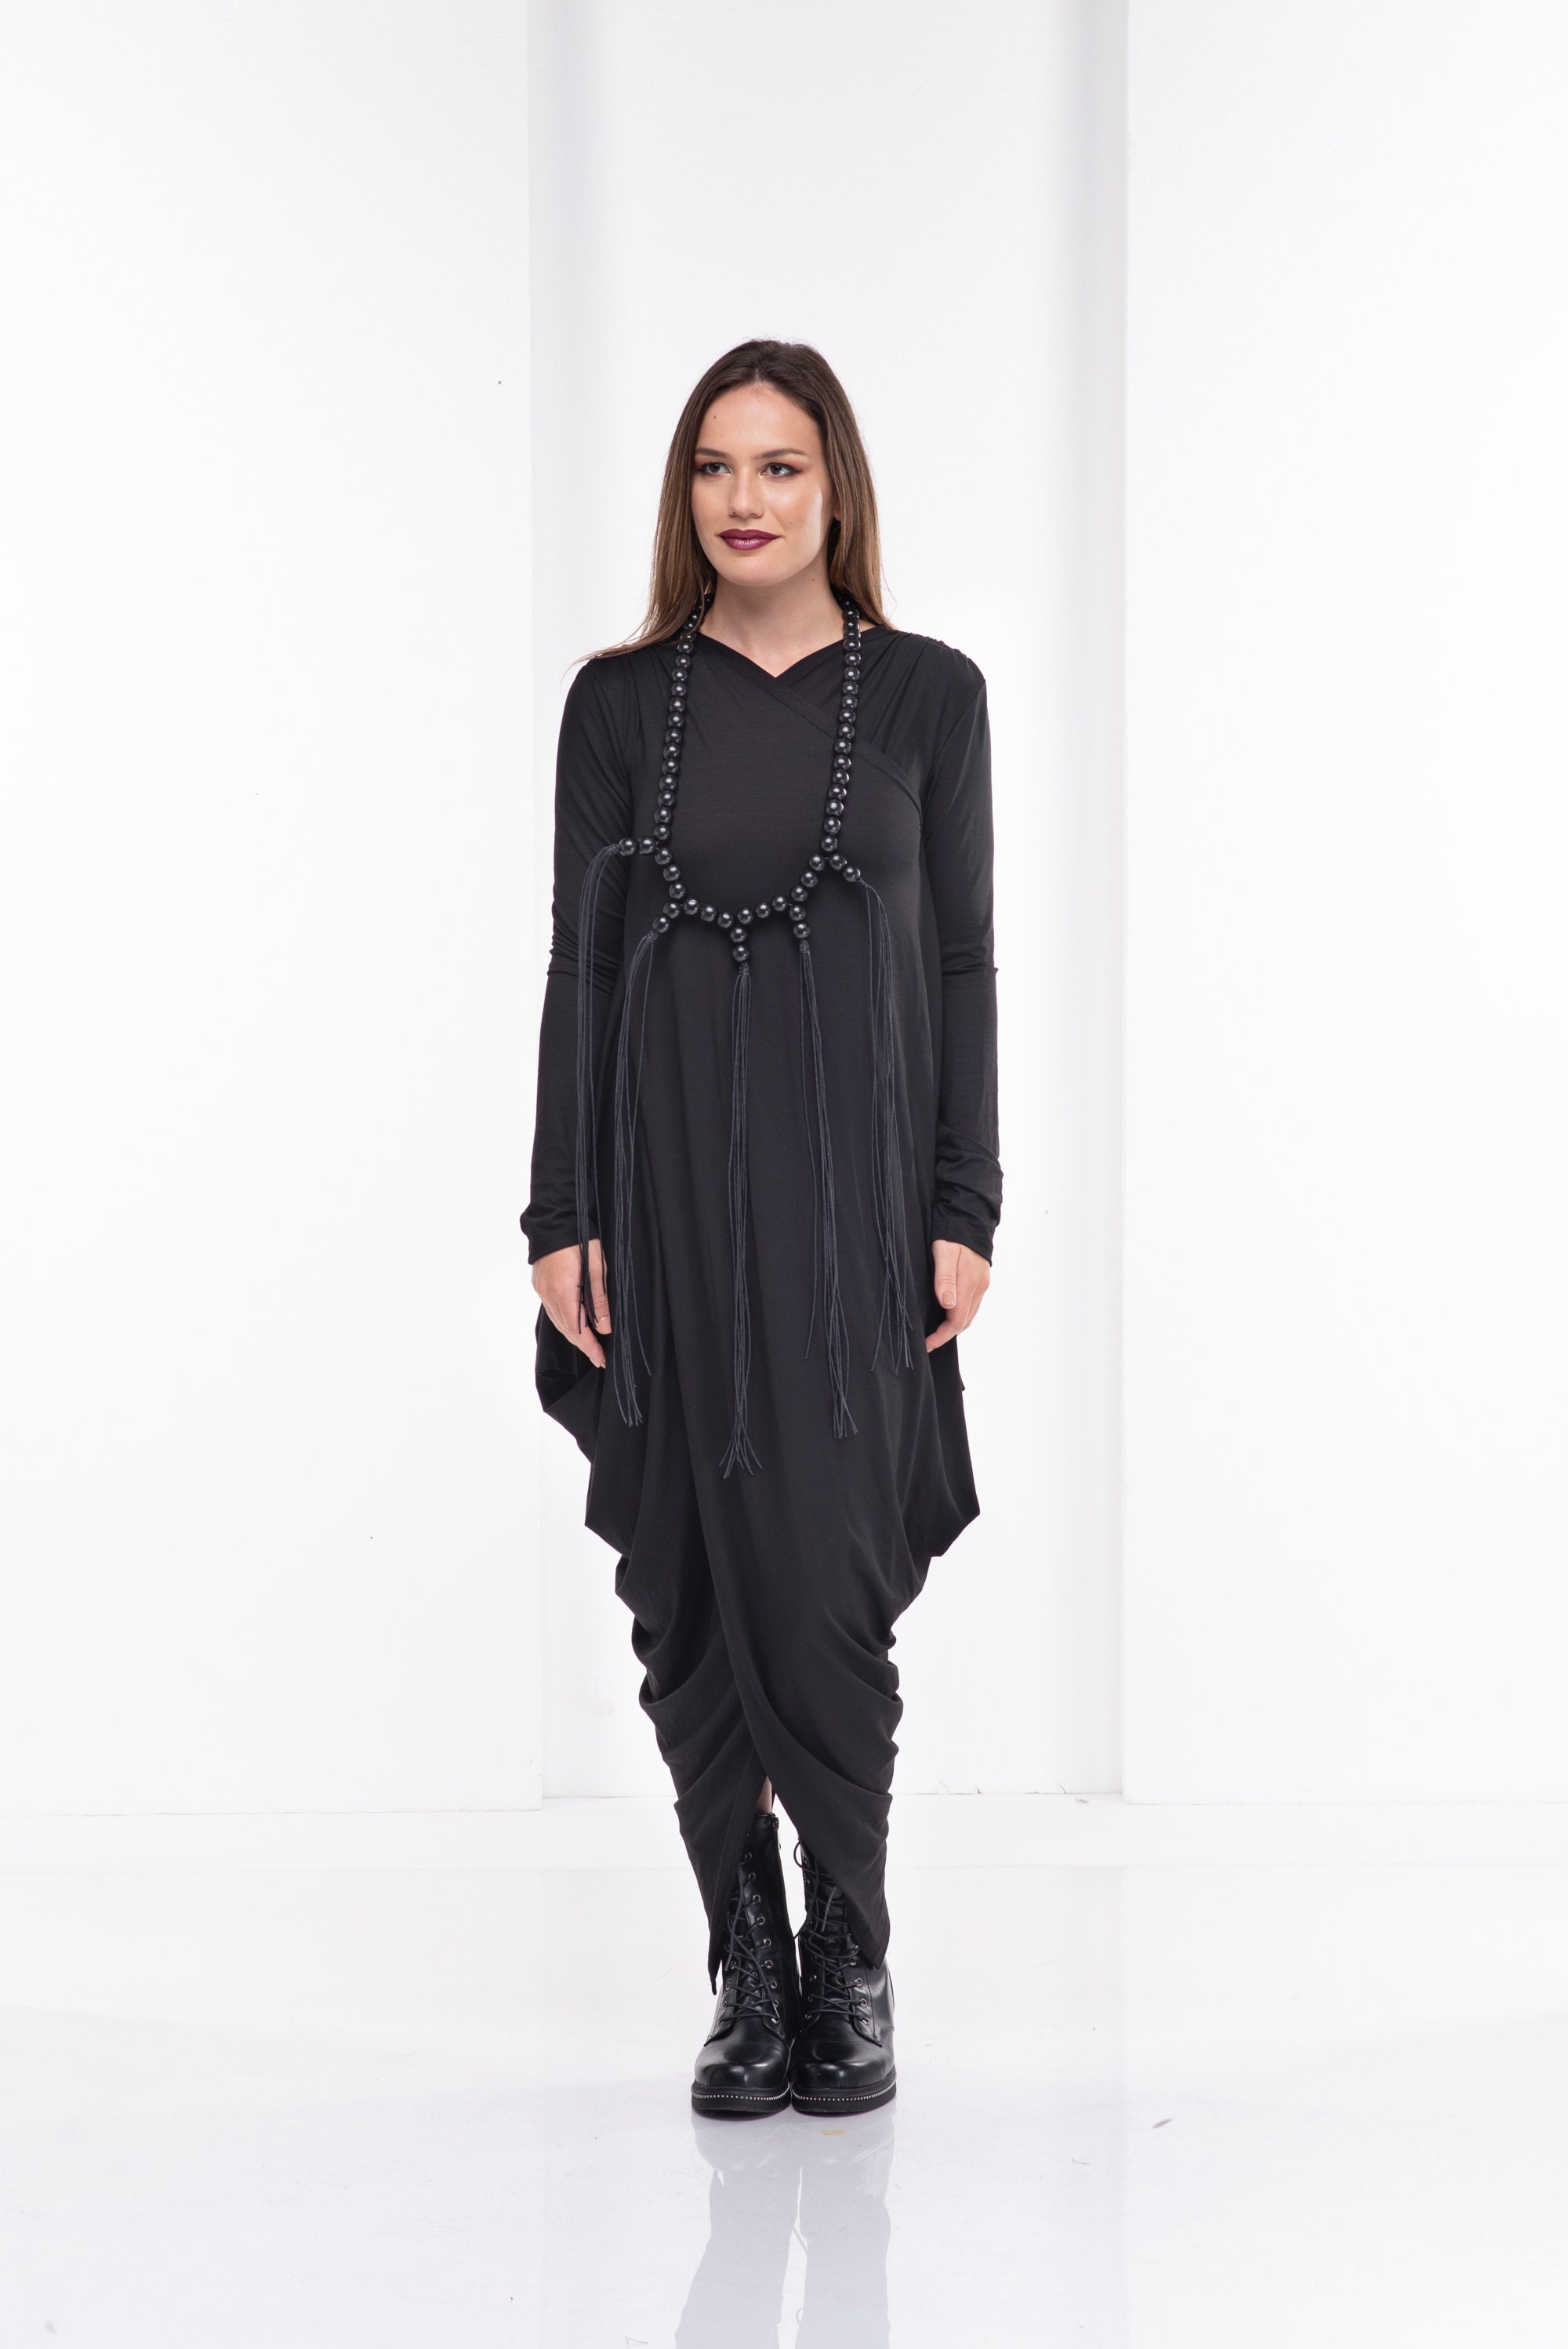 Black Asymmetrical Dress Extravagant Dress Kaftan Dress | Etsy